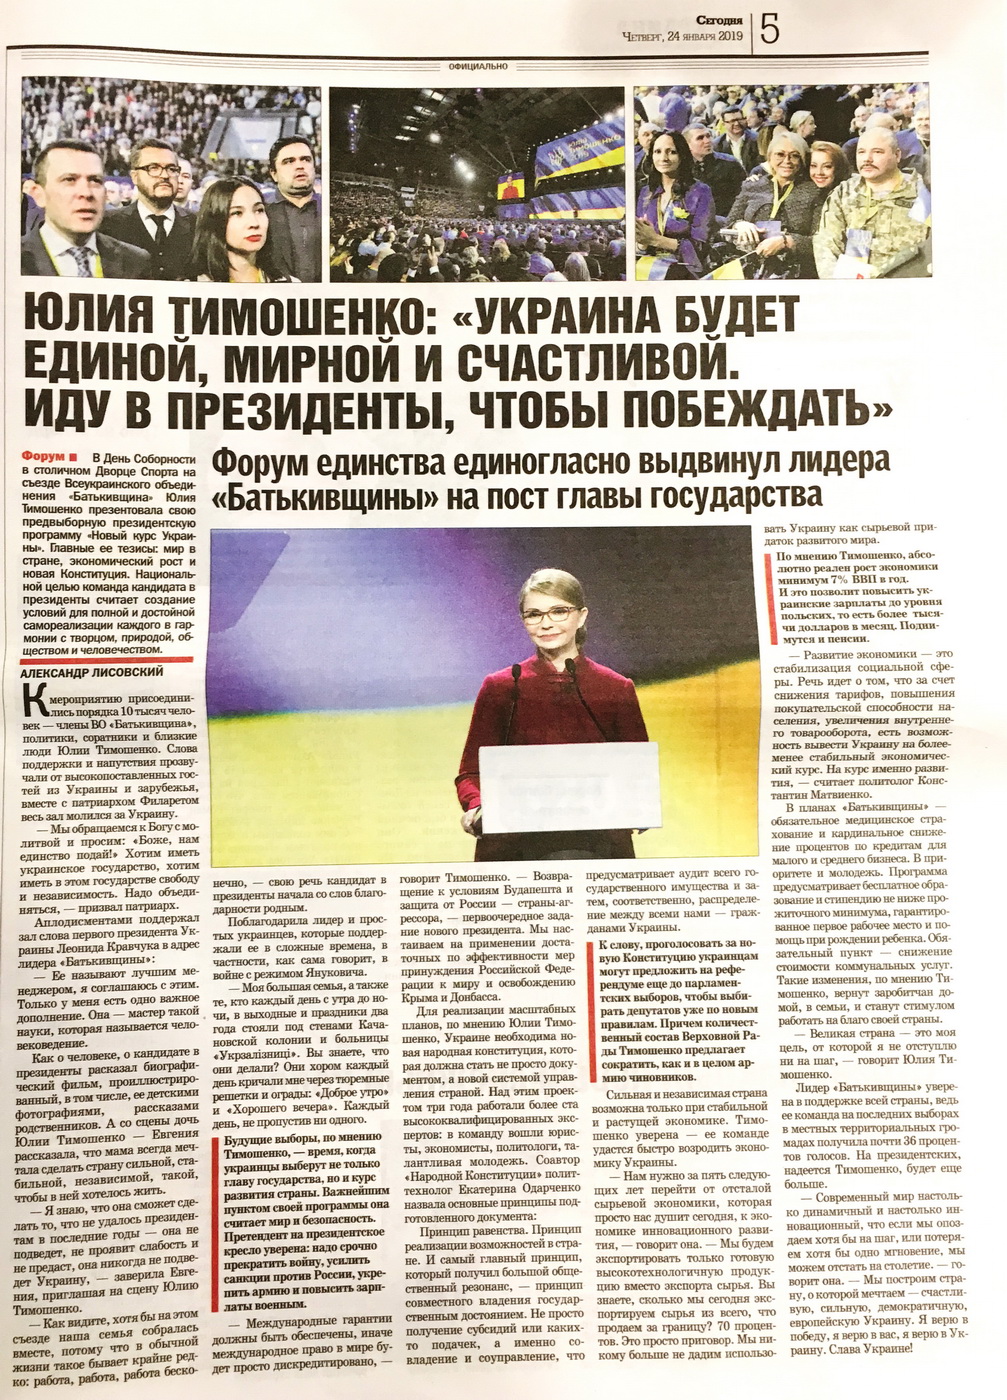 28 01 2019 Kyiv gazety dzynsa tymoshenko1